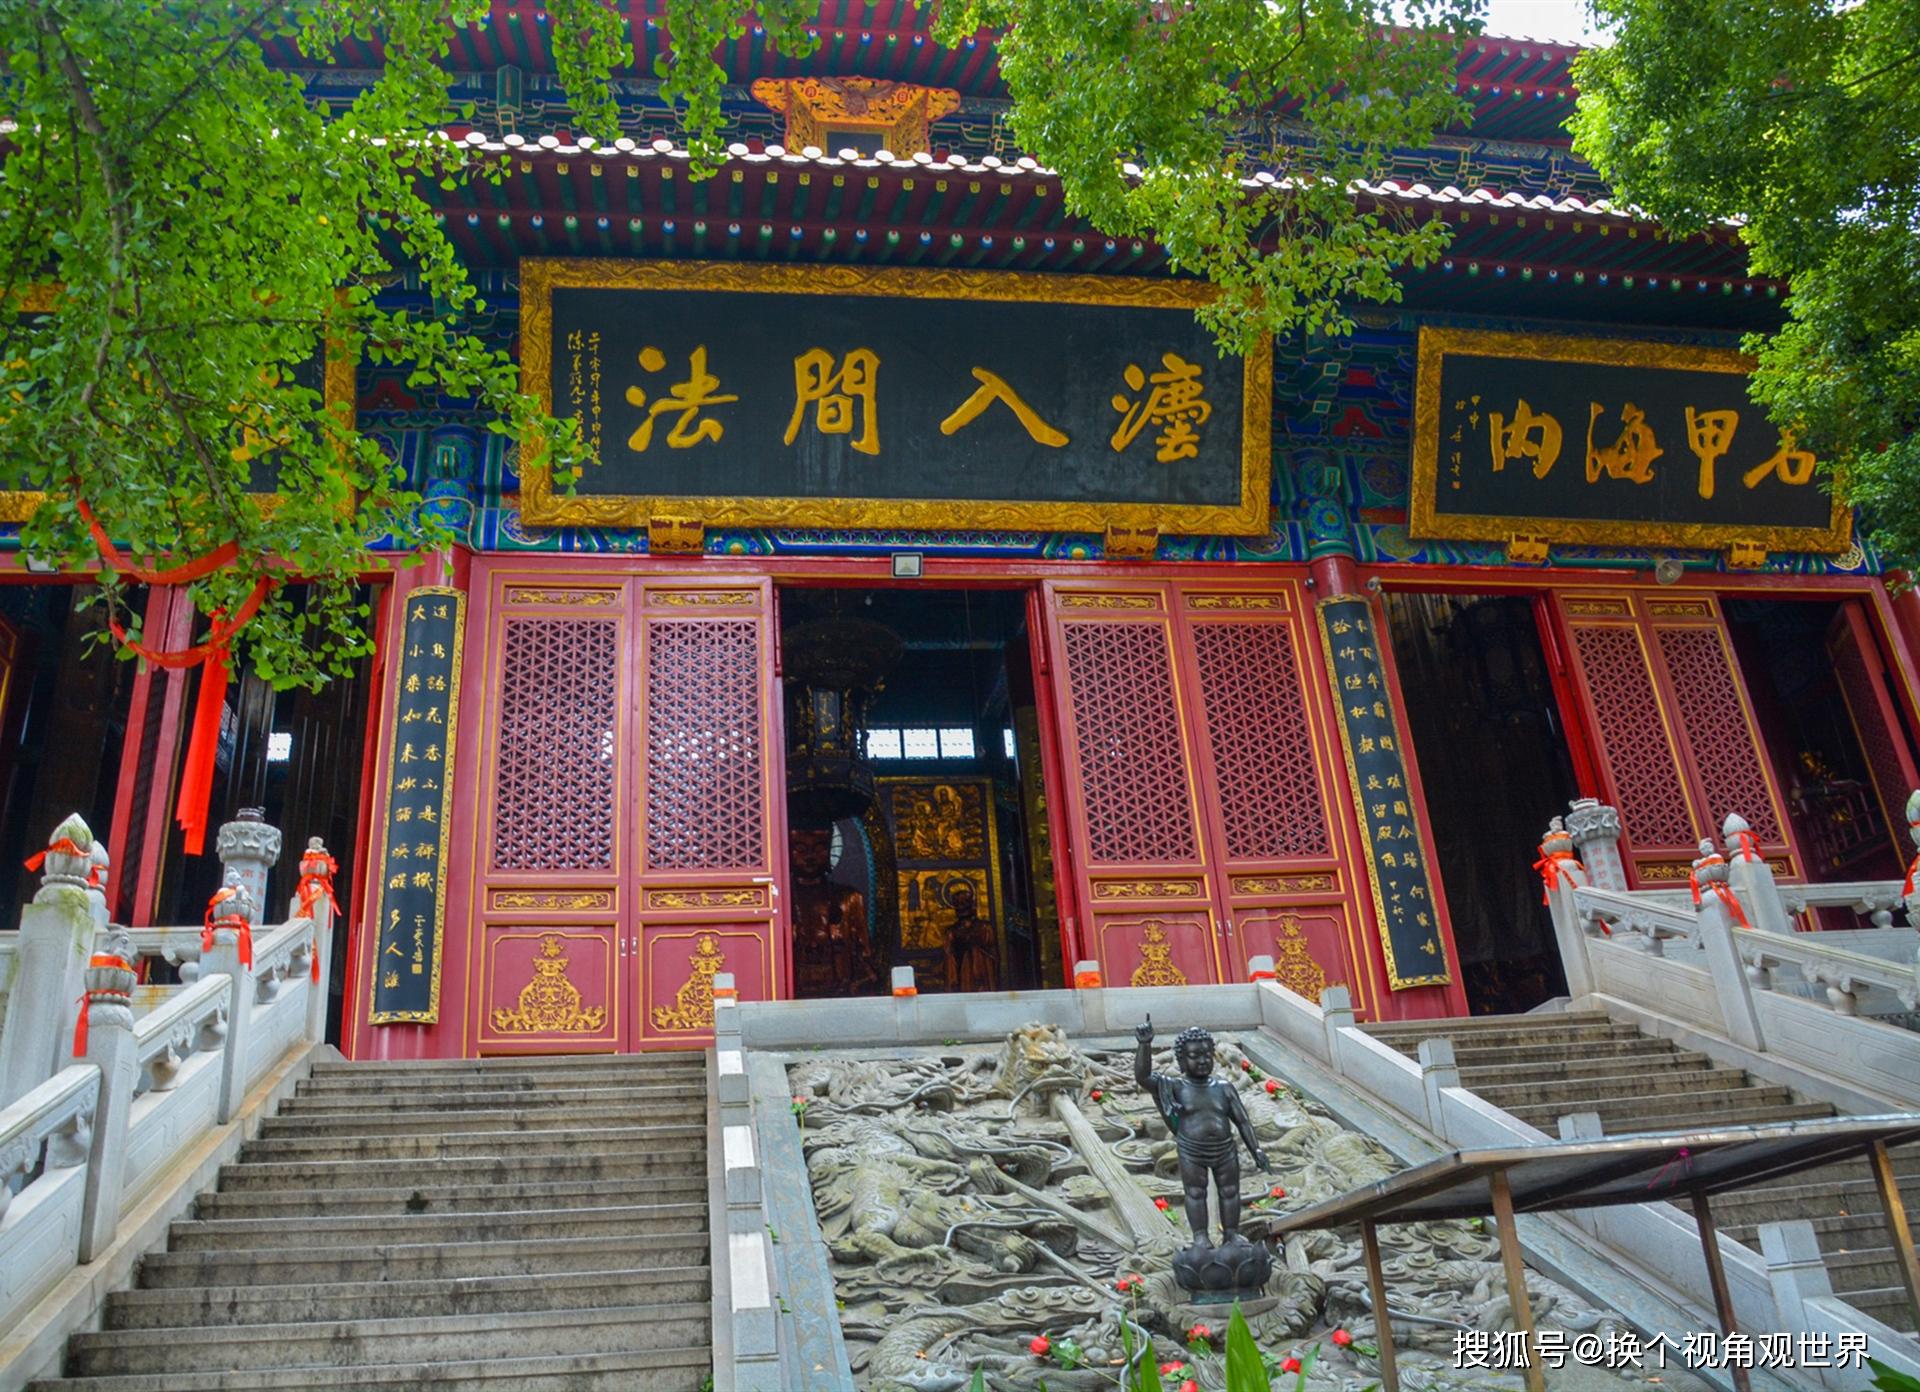 武汉唯一的皇家寺院,距今已有1600多年历史,但香火却不及归元寺